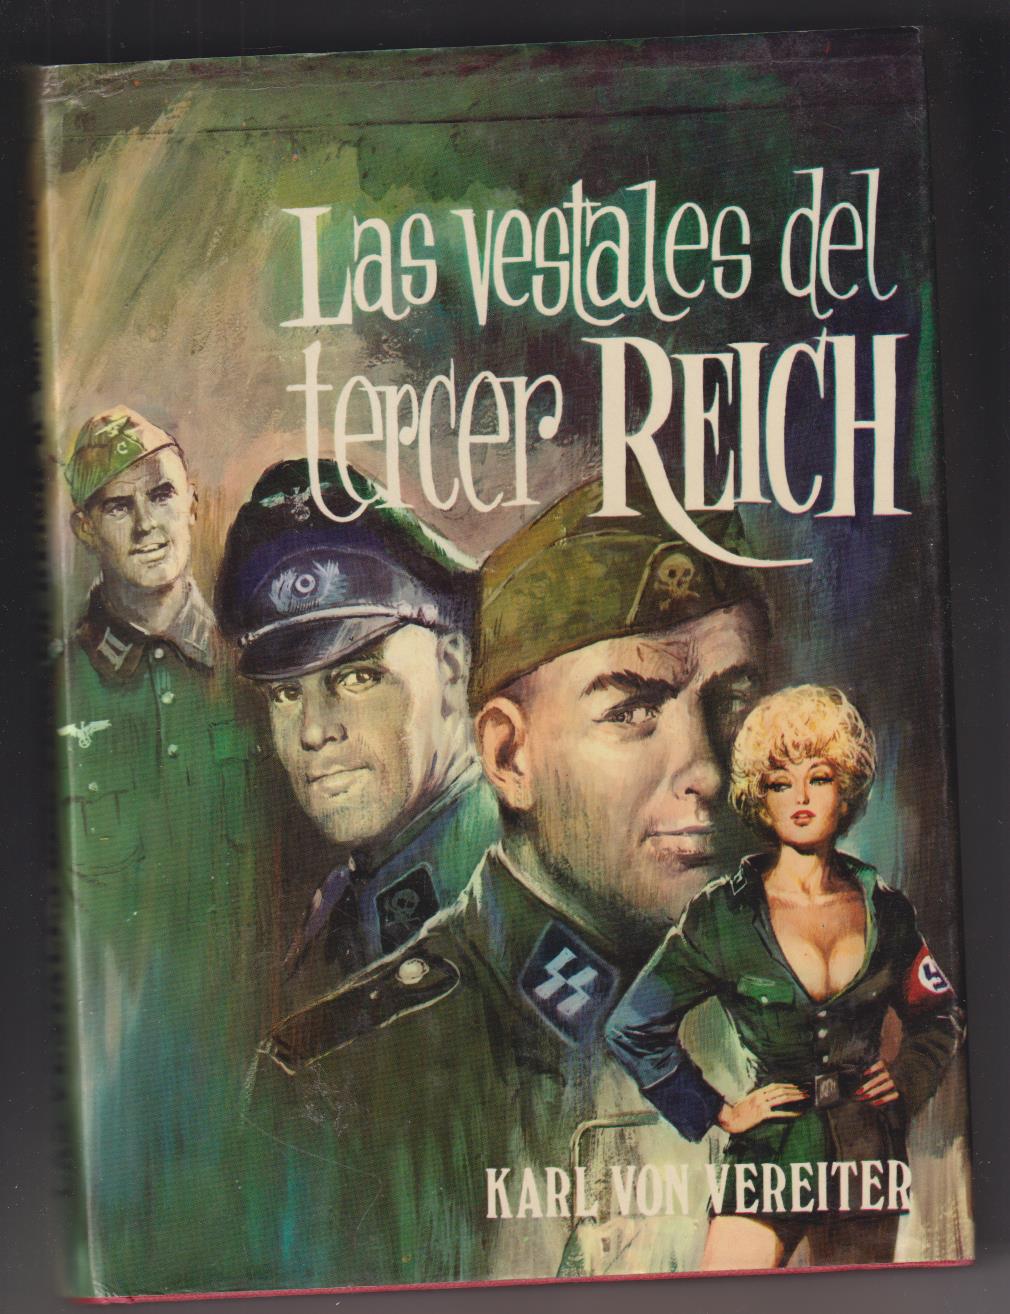 Karl von Vereiter. Las vestales del Tercer Reich. Producciones Editoriales 1974